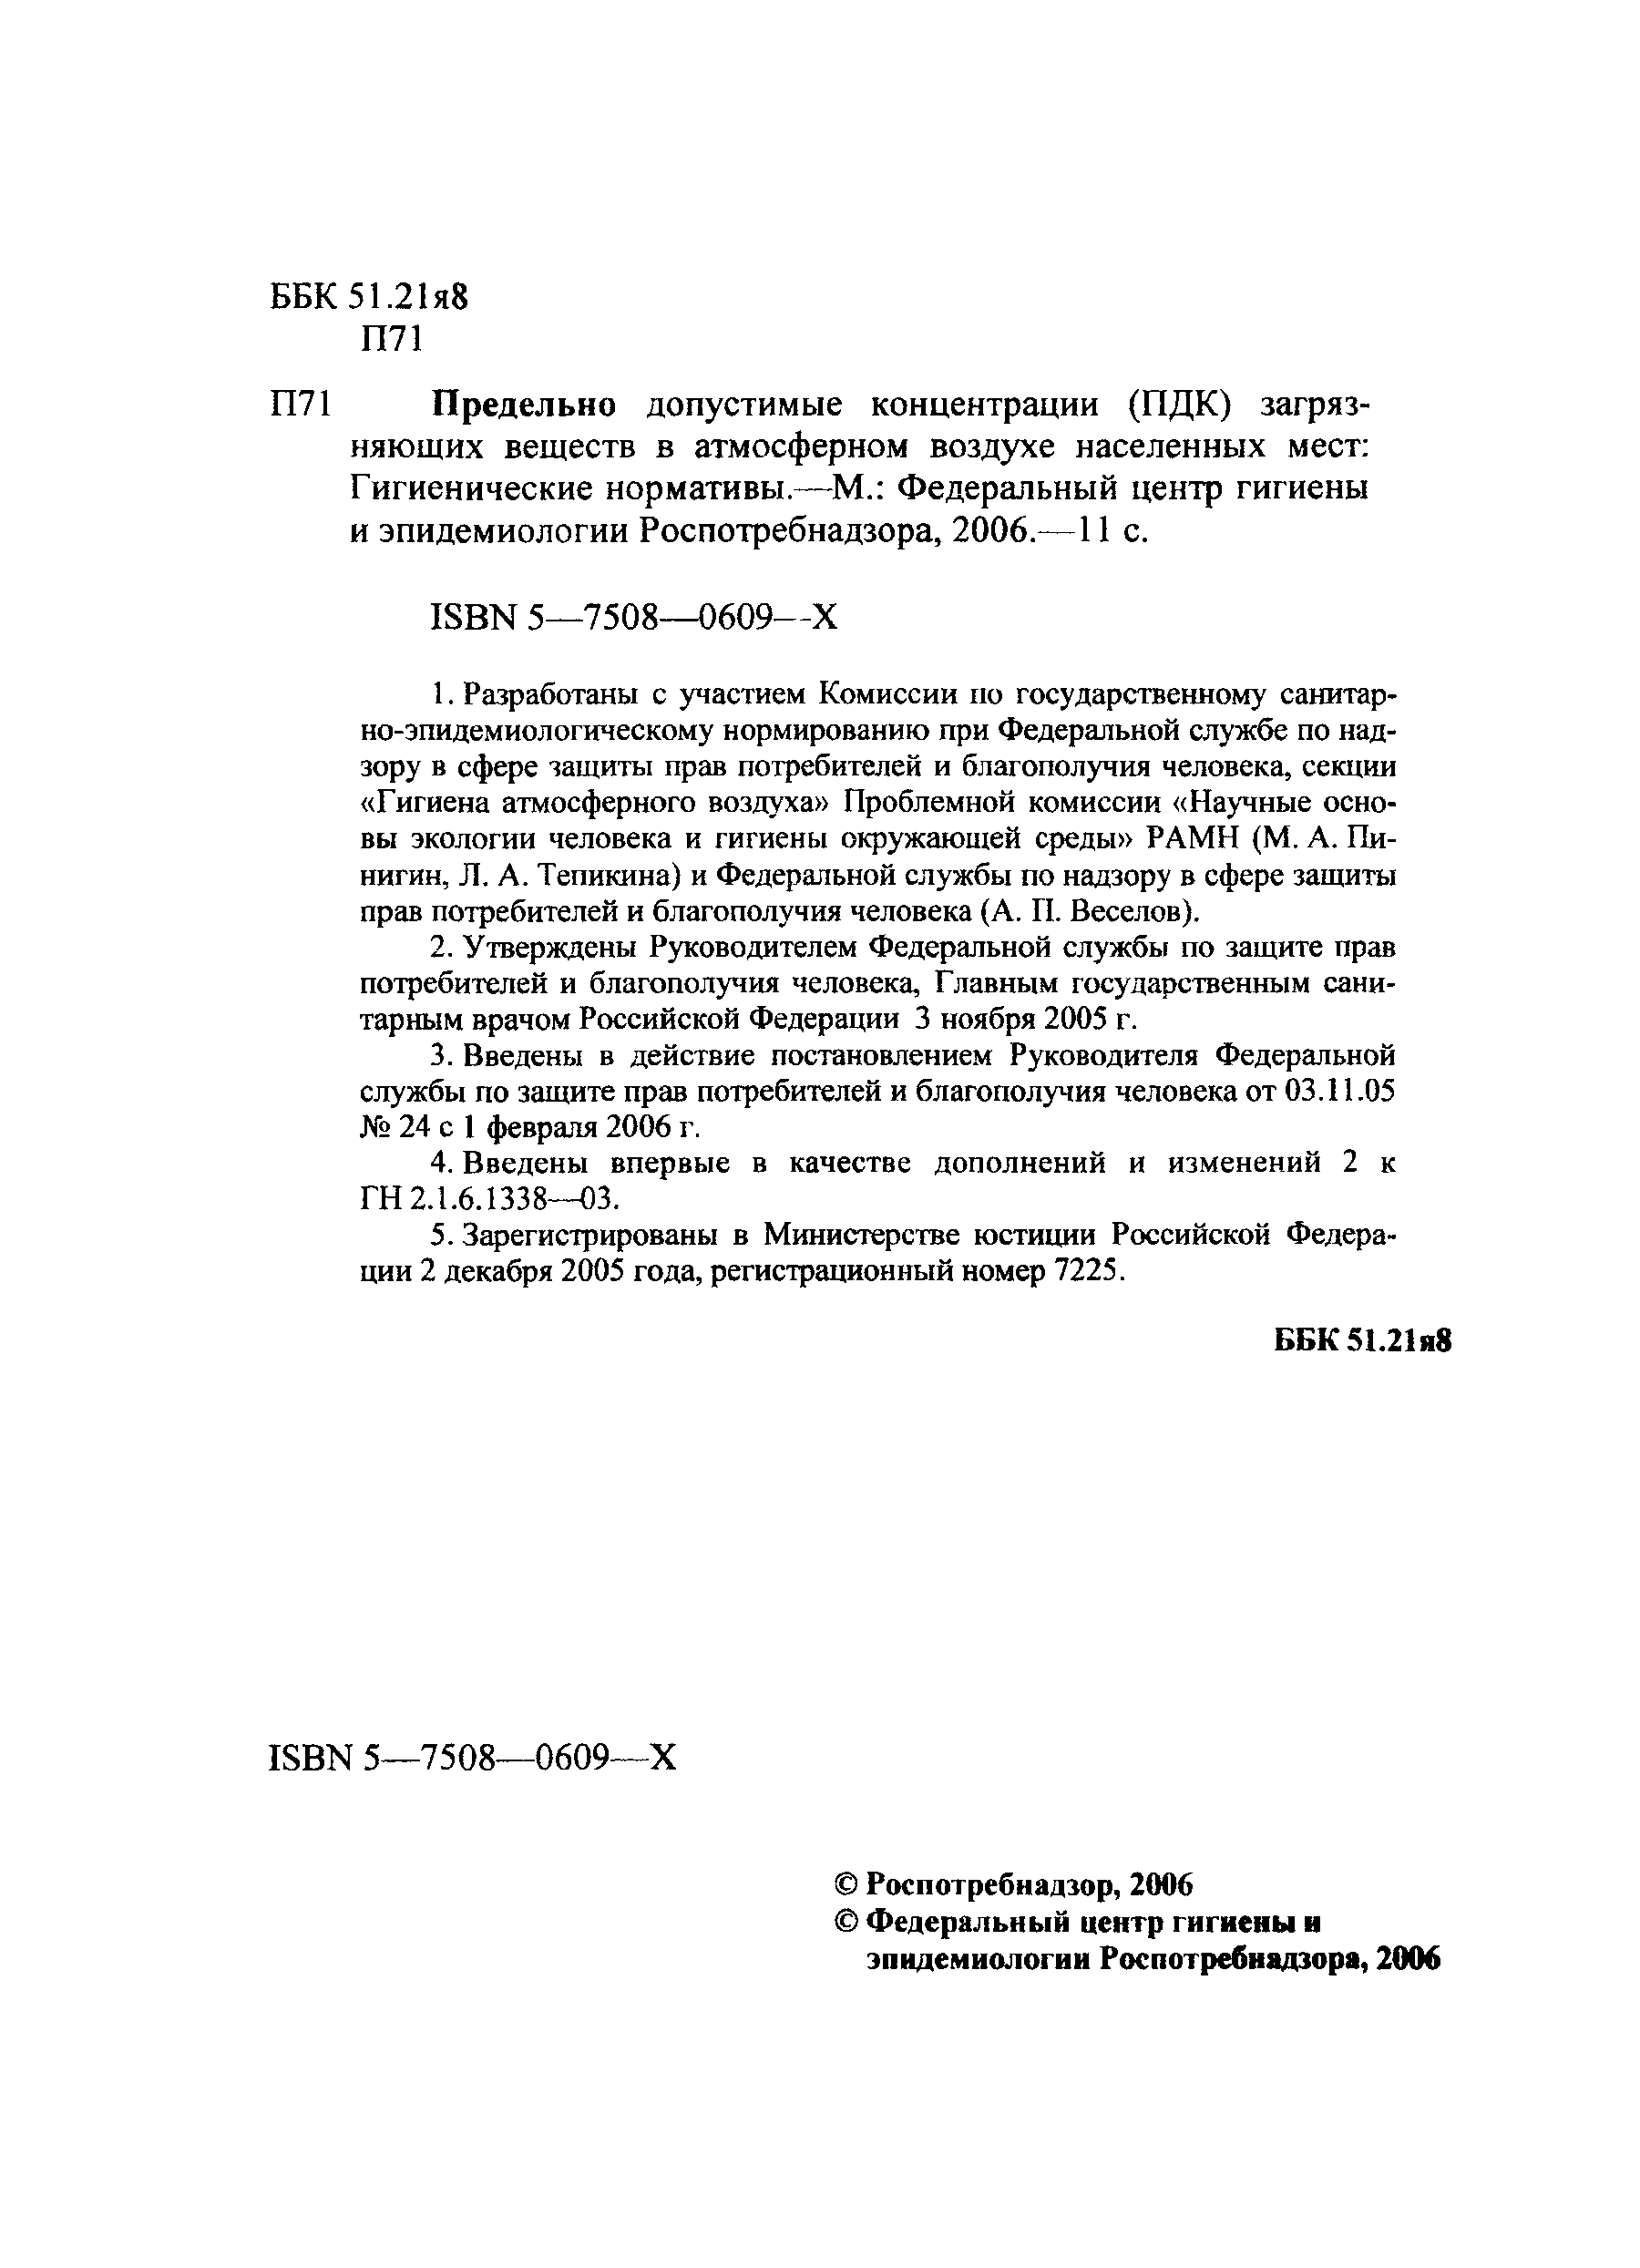 № ГН 2.1.6.1983-05